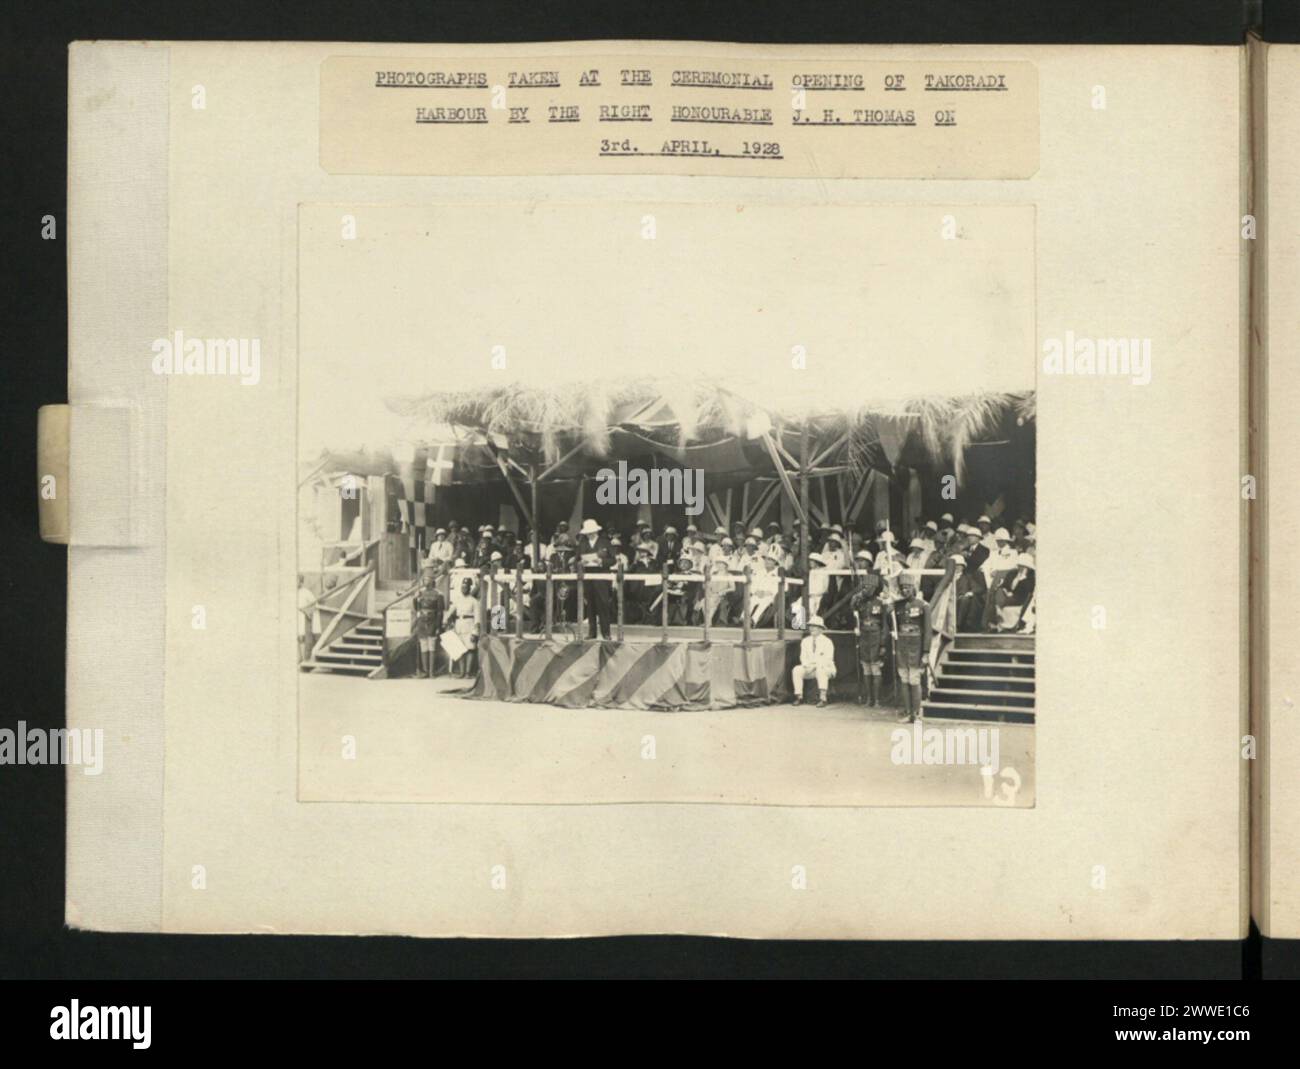 Description : photographies prises lors de la cérémonie d'ouverture du port de Takoradi par le très honorable J. H. Thomas le 3 avril 1928. Lieu : Takoradi date : 03 avril 1928 afrique Banque D'Images